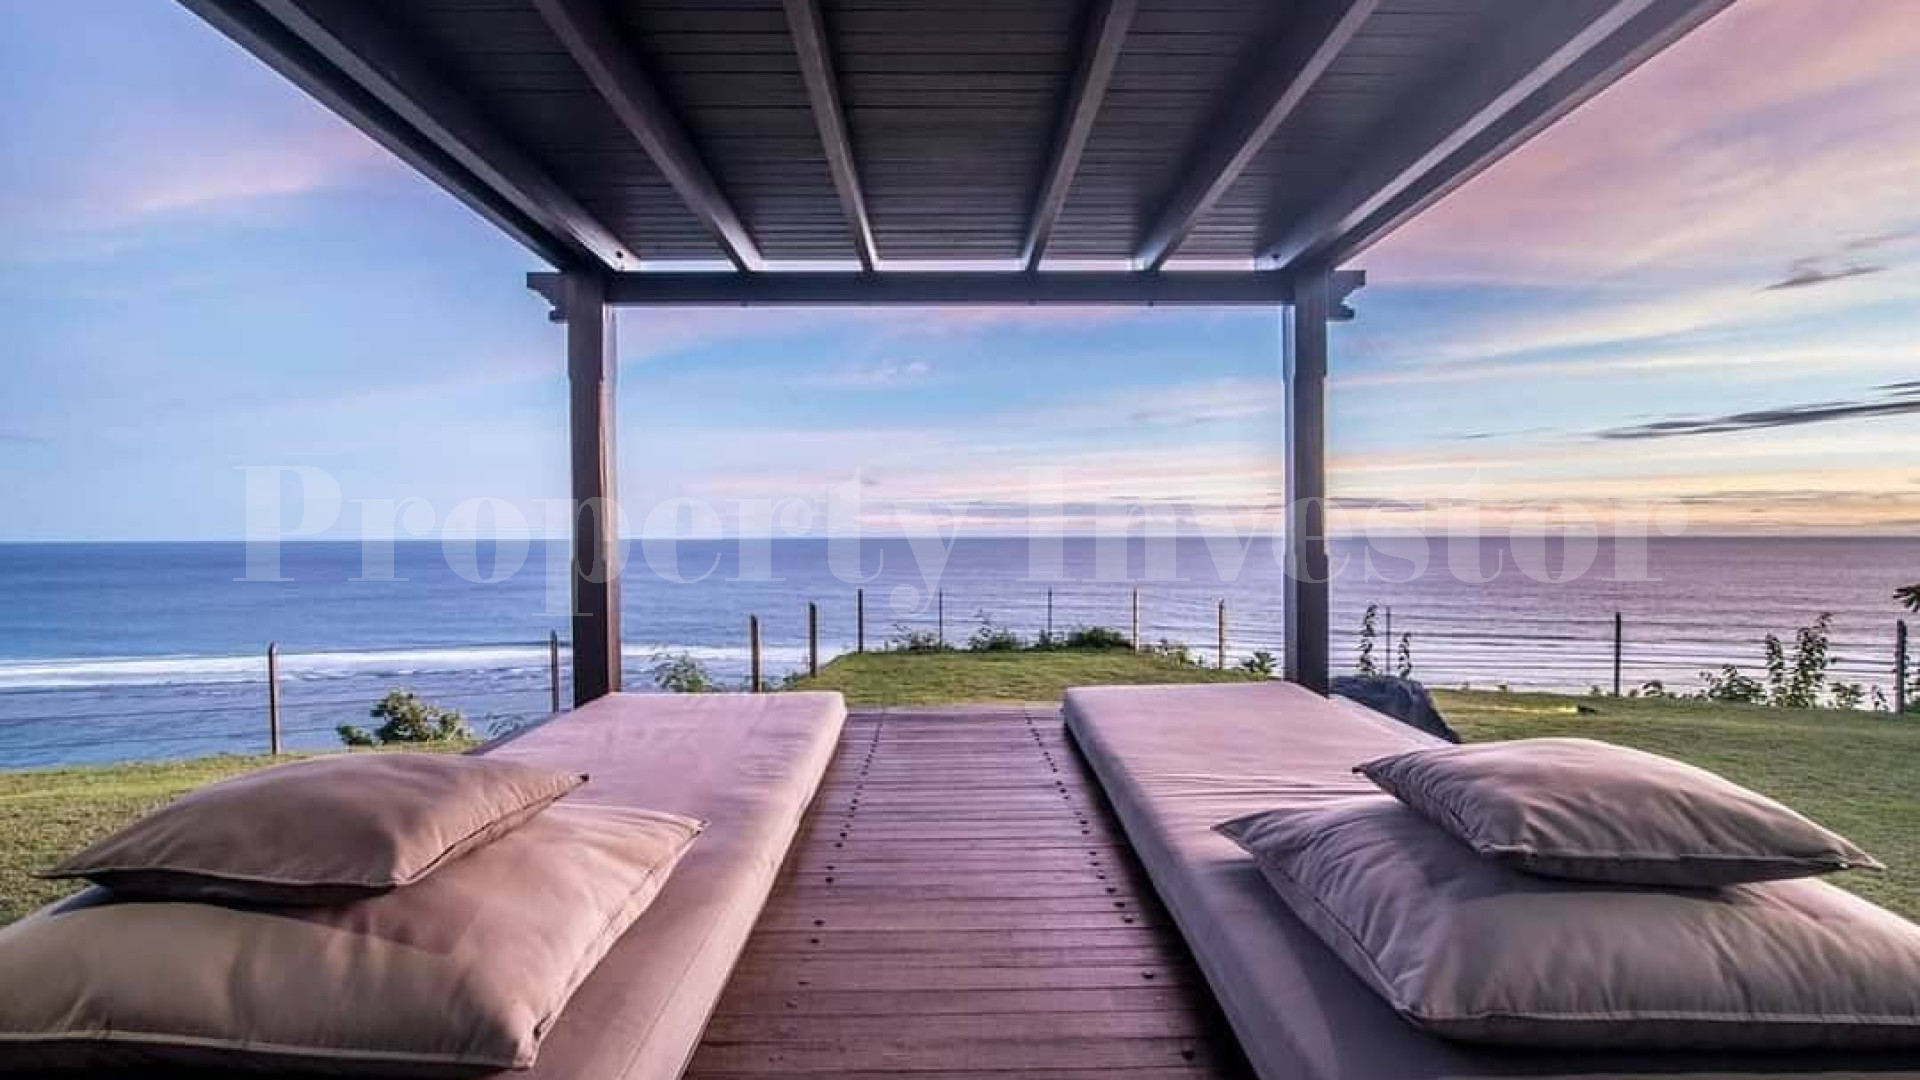 Превосходная роскошная вилла на 3 спальни на утёсе с видом на океан с прямым выходом к пляжу в Улувату, Бали